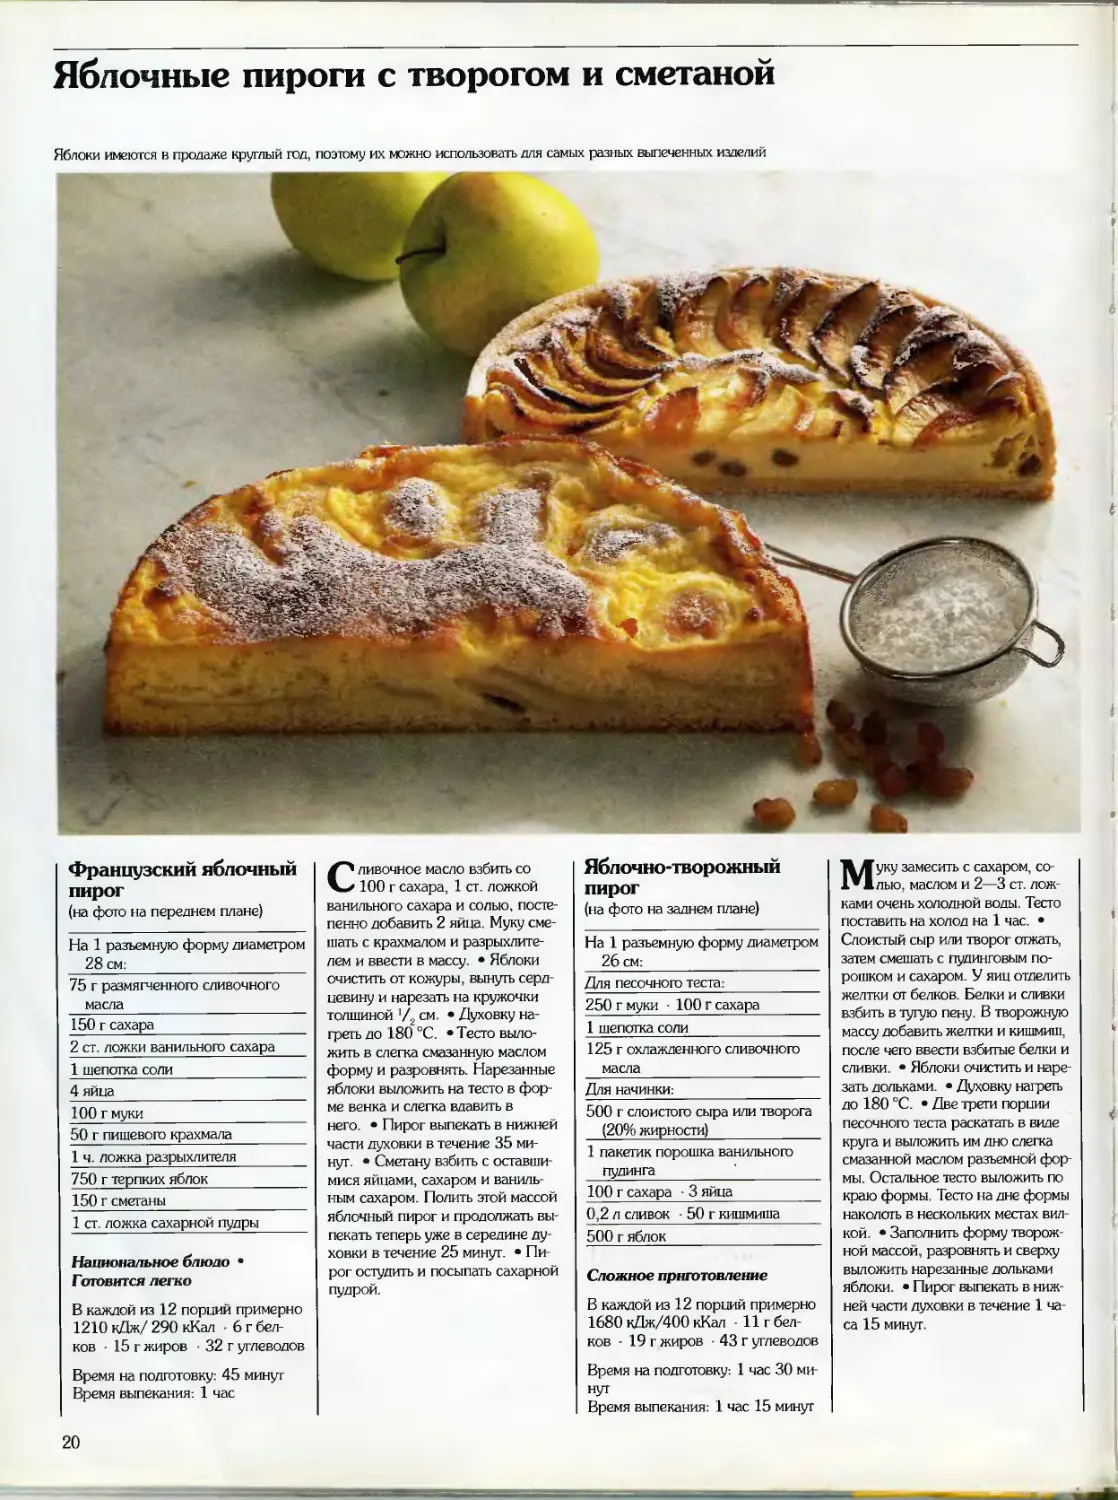 Рецепты пирога в картинках с описанием